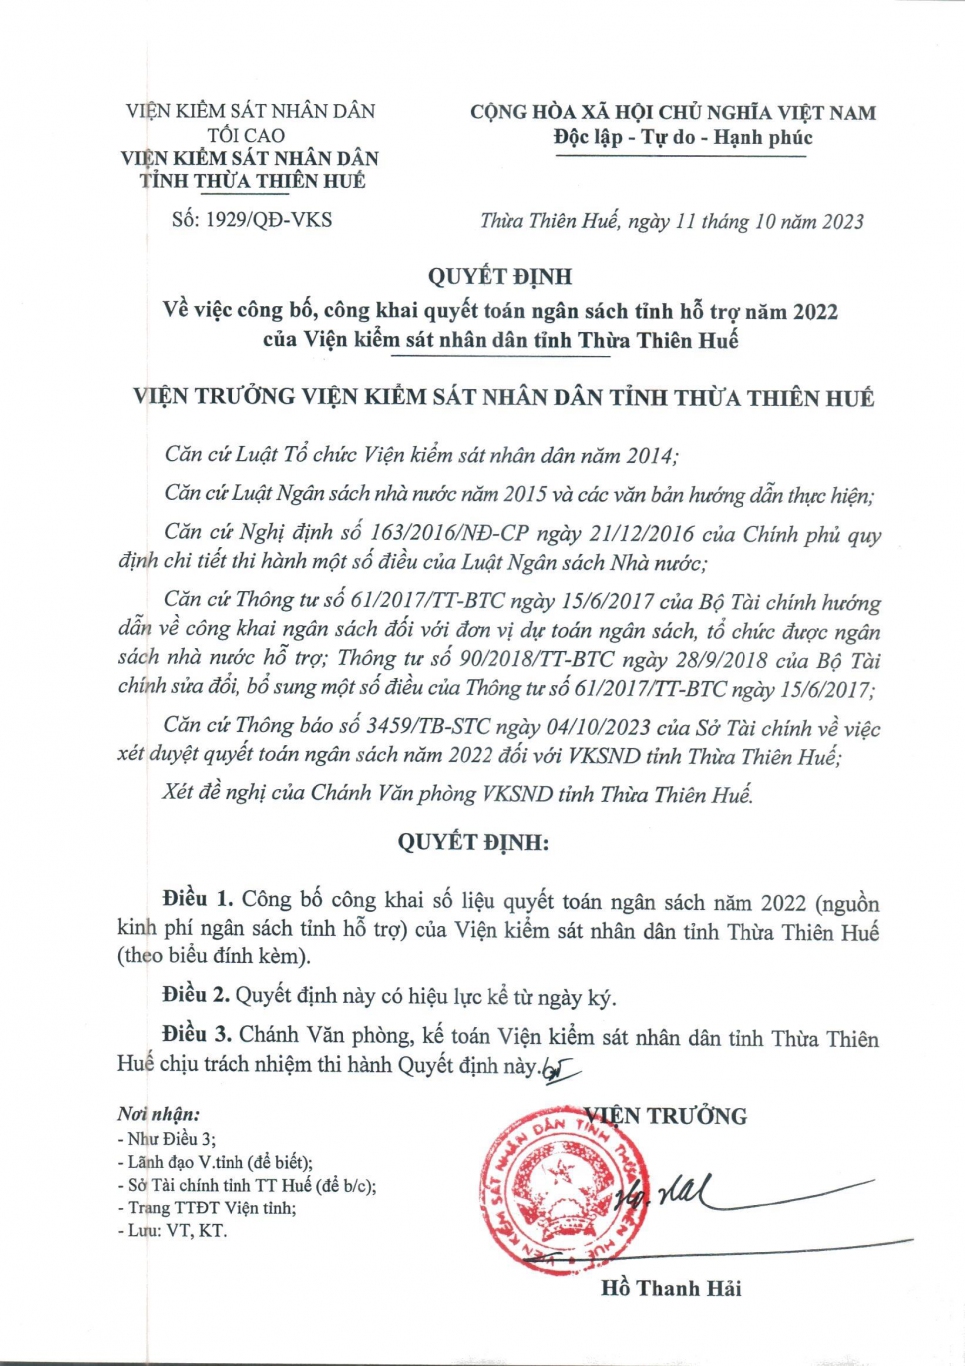 congkhai qt2022 dp page 1